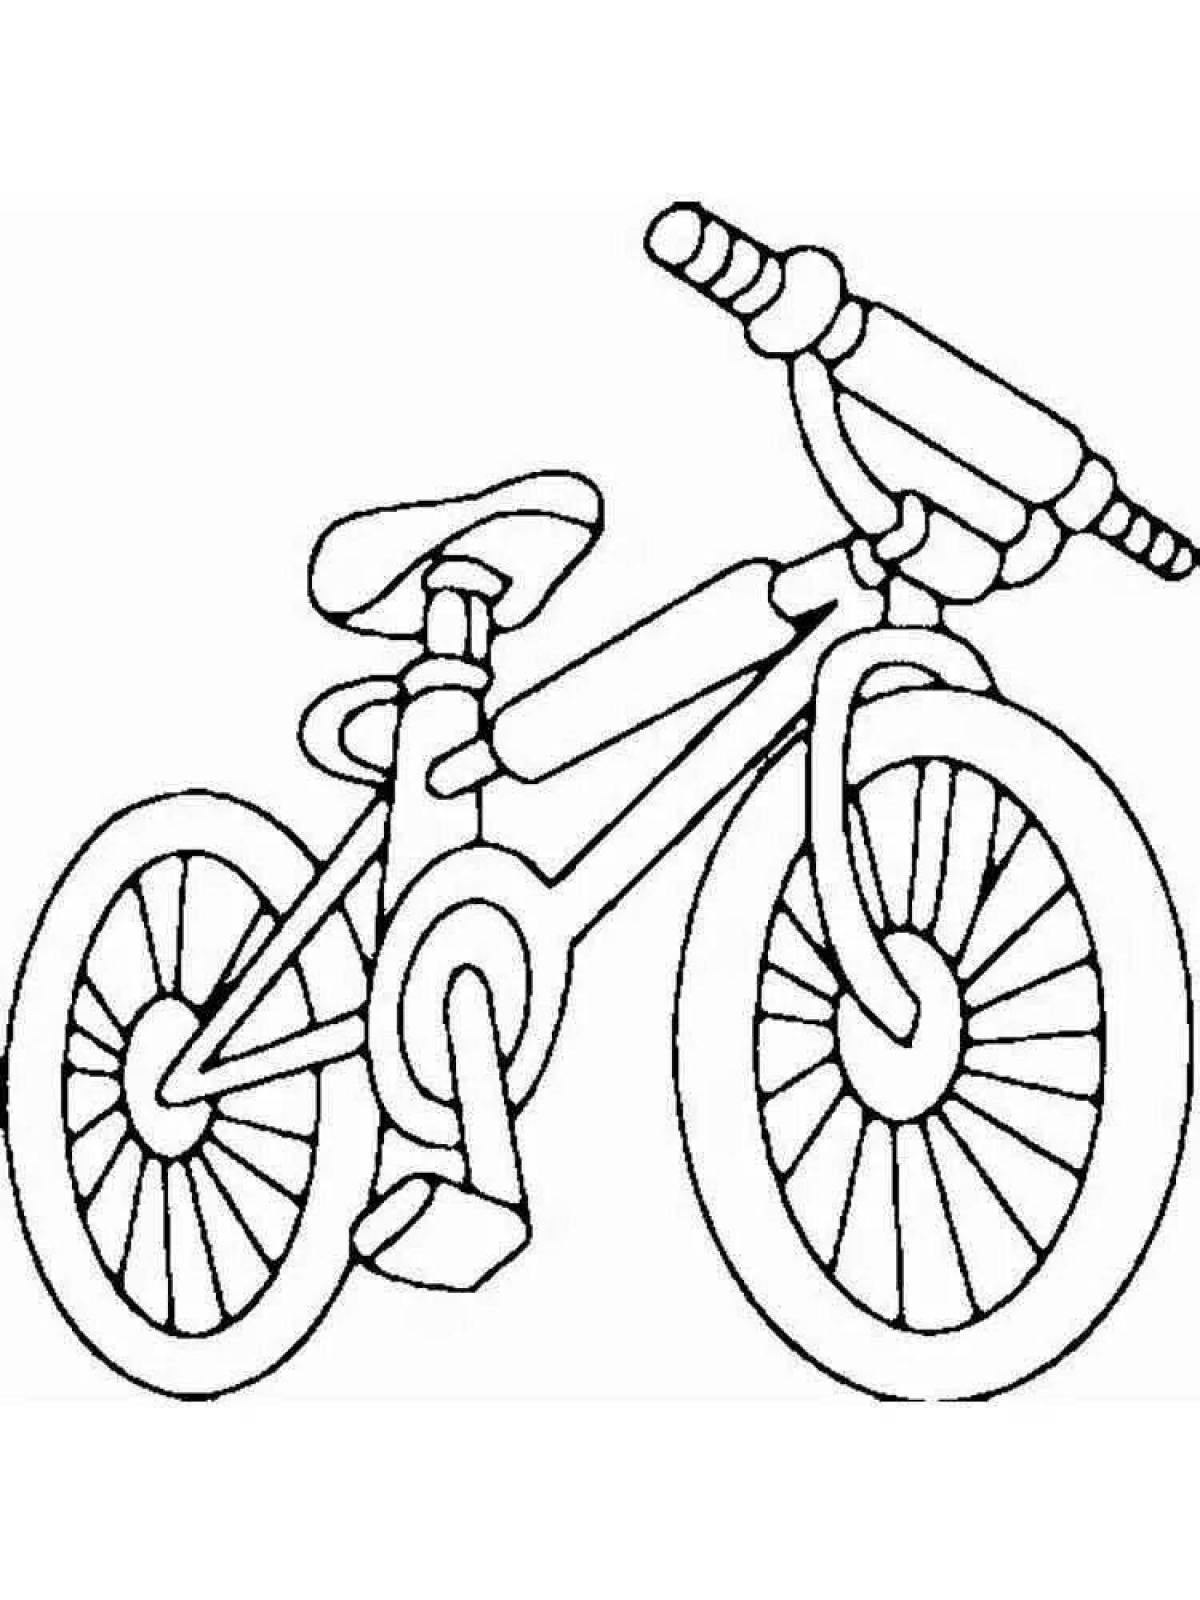 Красочная раскраска велосипед для детей